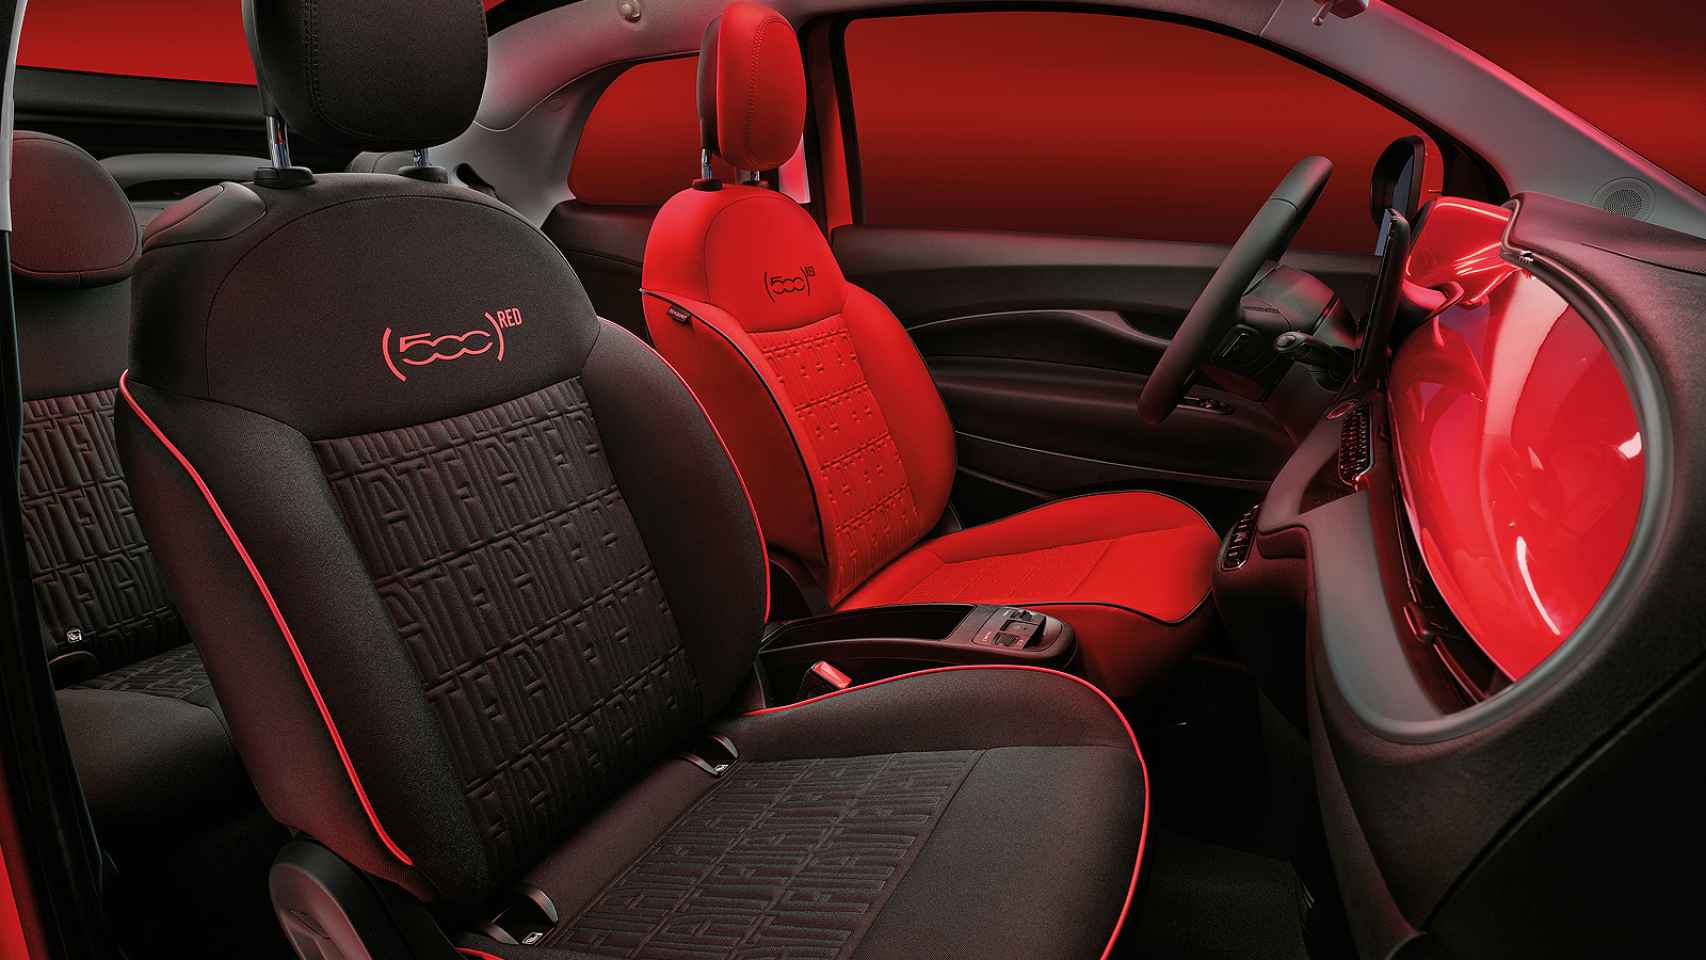 Los más aventureros pueden elegir un asiento en cada color en este Fiat 500 e red.